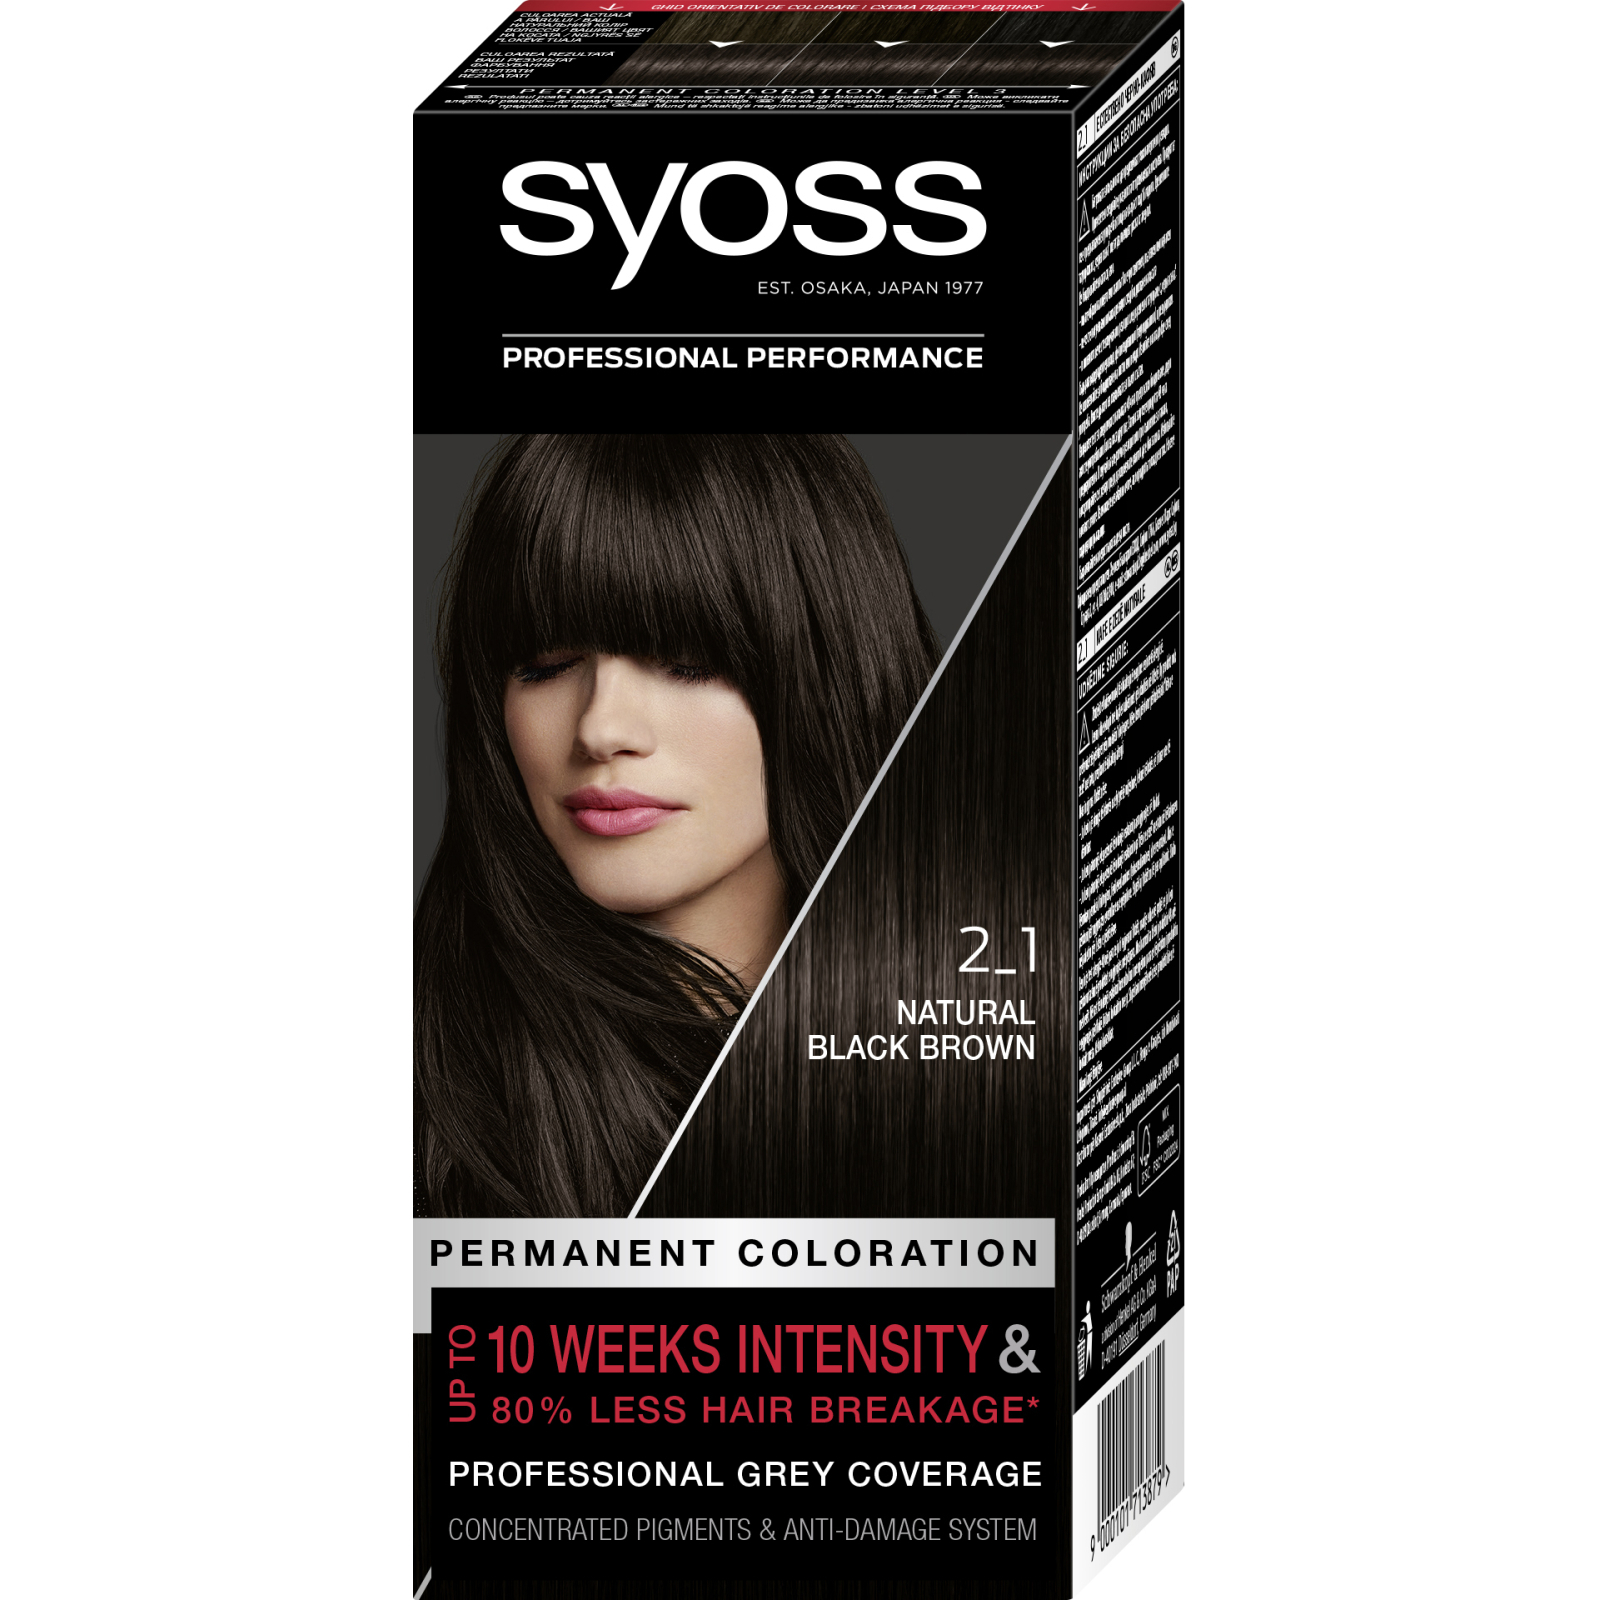 Краска для волос Syoss 13-5 Платиновый осветитель 115 мл (9000100929820)